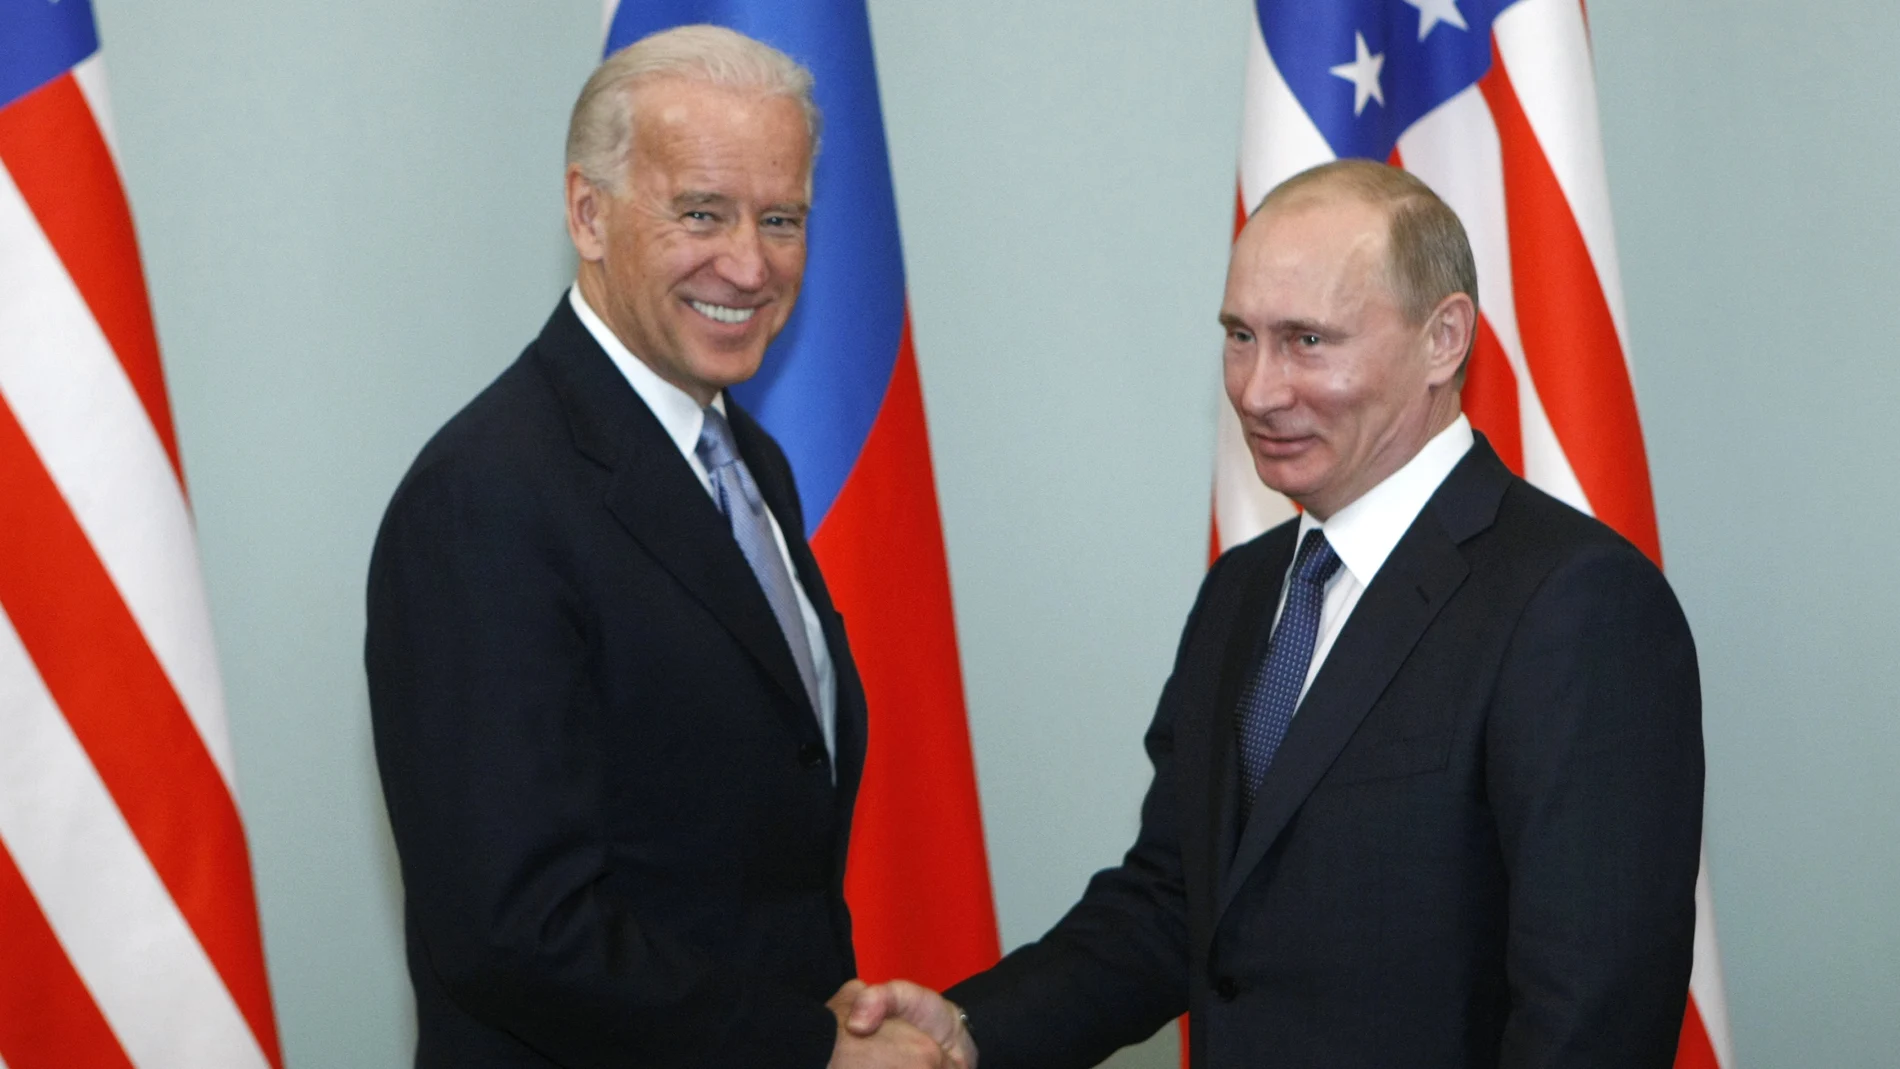 El entonces vicepresidente de EE UU, Joe Biden, saluda al el entonces primer ministro de Rusia, Vladimir Putin en Moscú